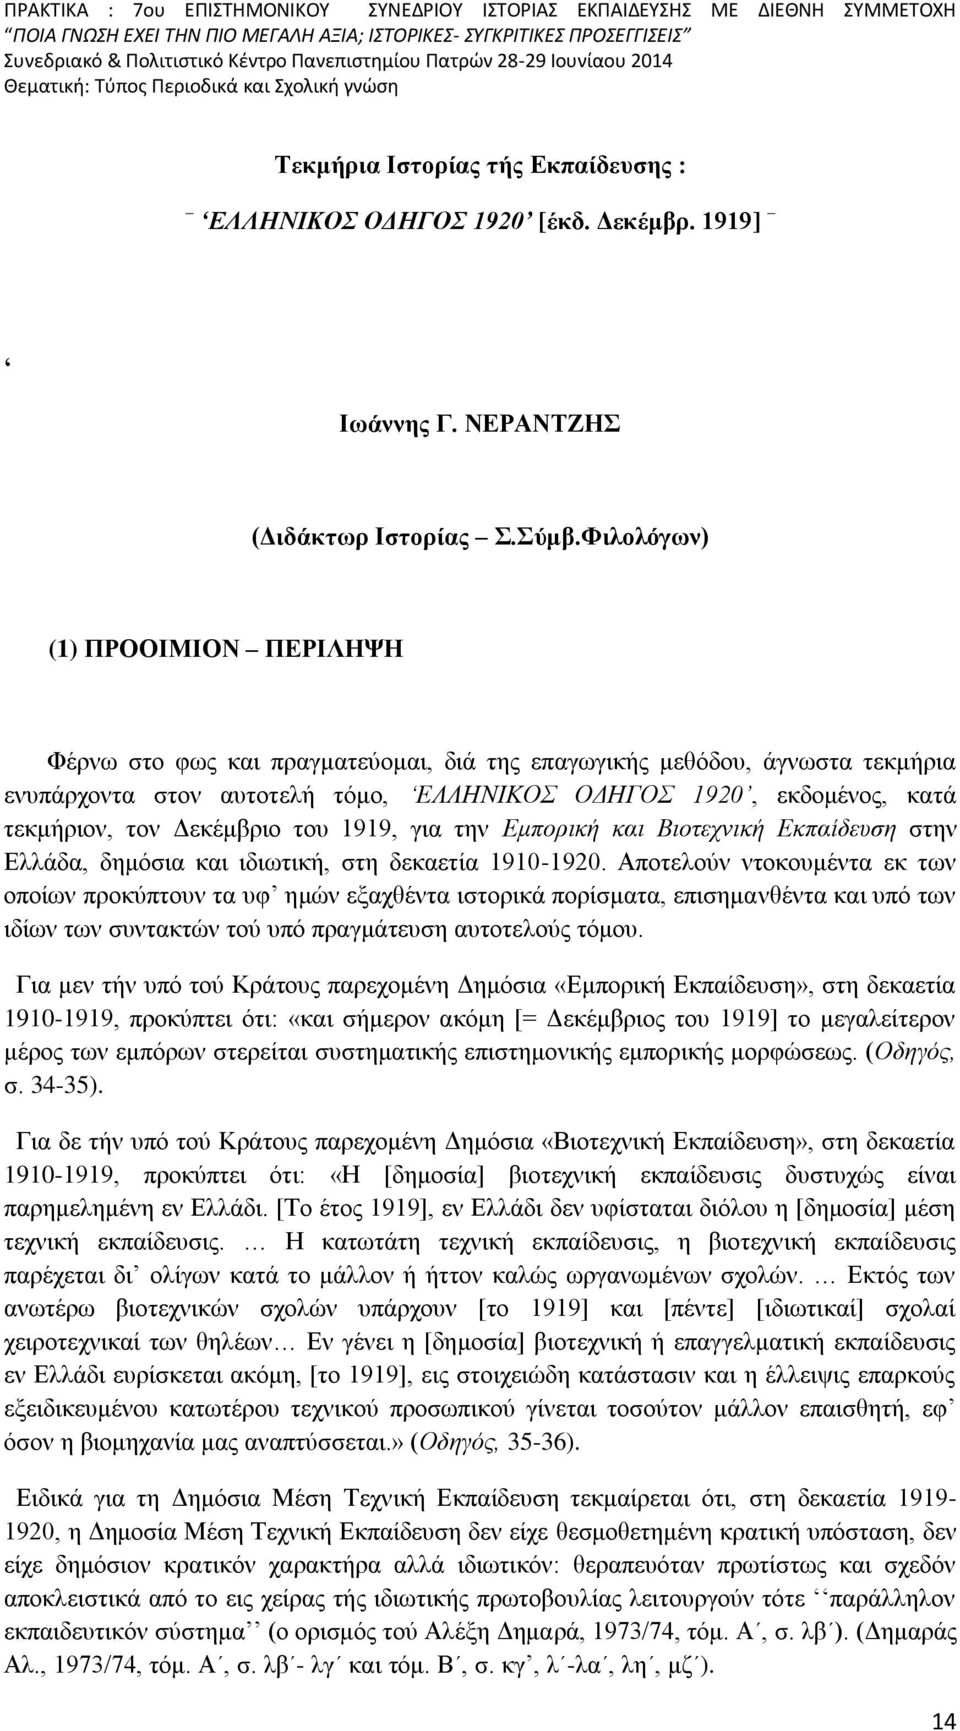 Δεκέμβριο του 1919, για την Εμπορική και Βιοτεχνική Εκπαίδευση στην Ελλάδα, δημόσια και ιδιωτική, στη δεκαετία 1910-1920.